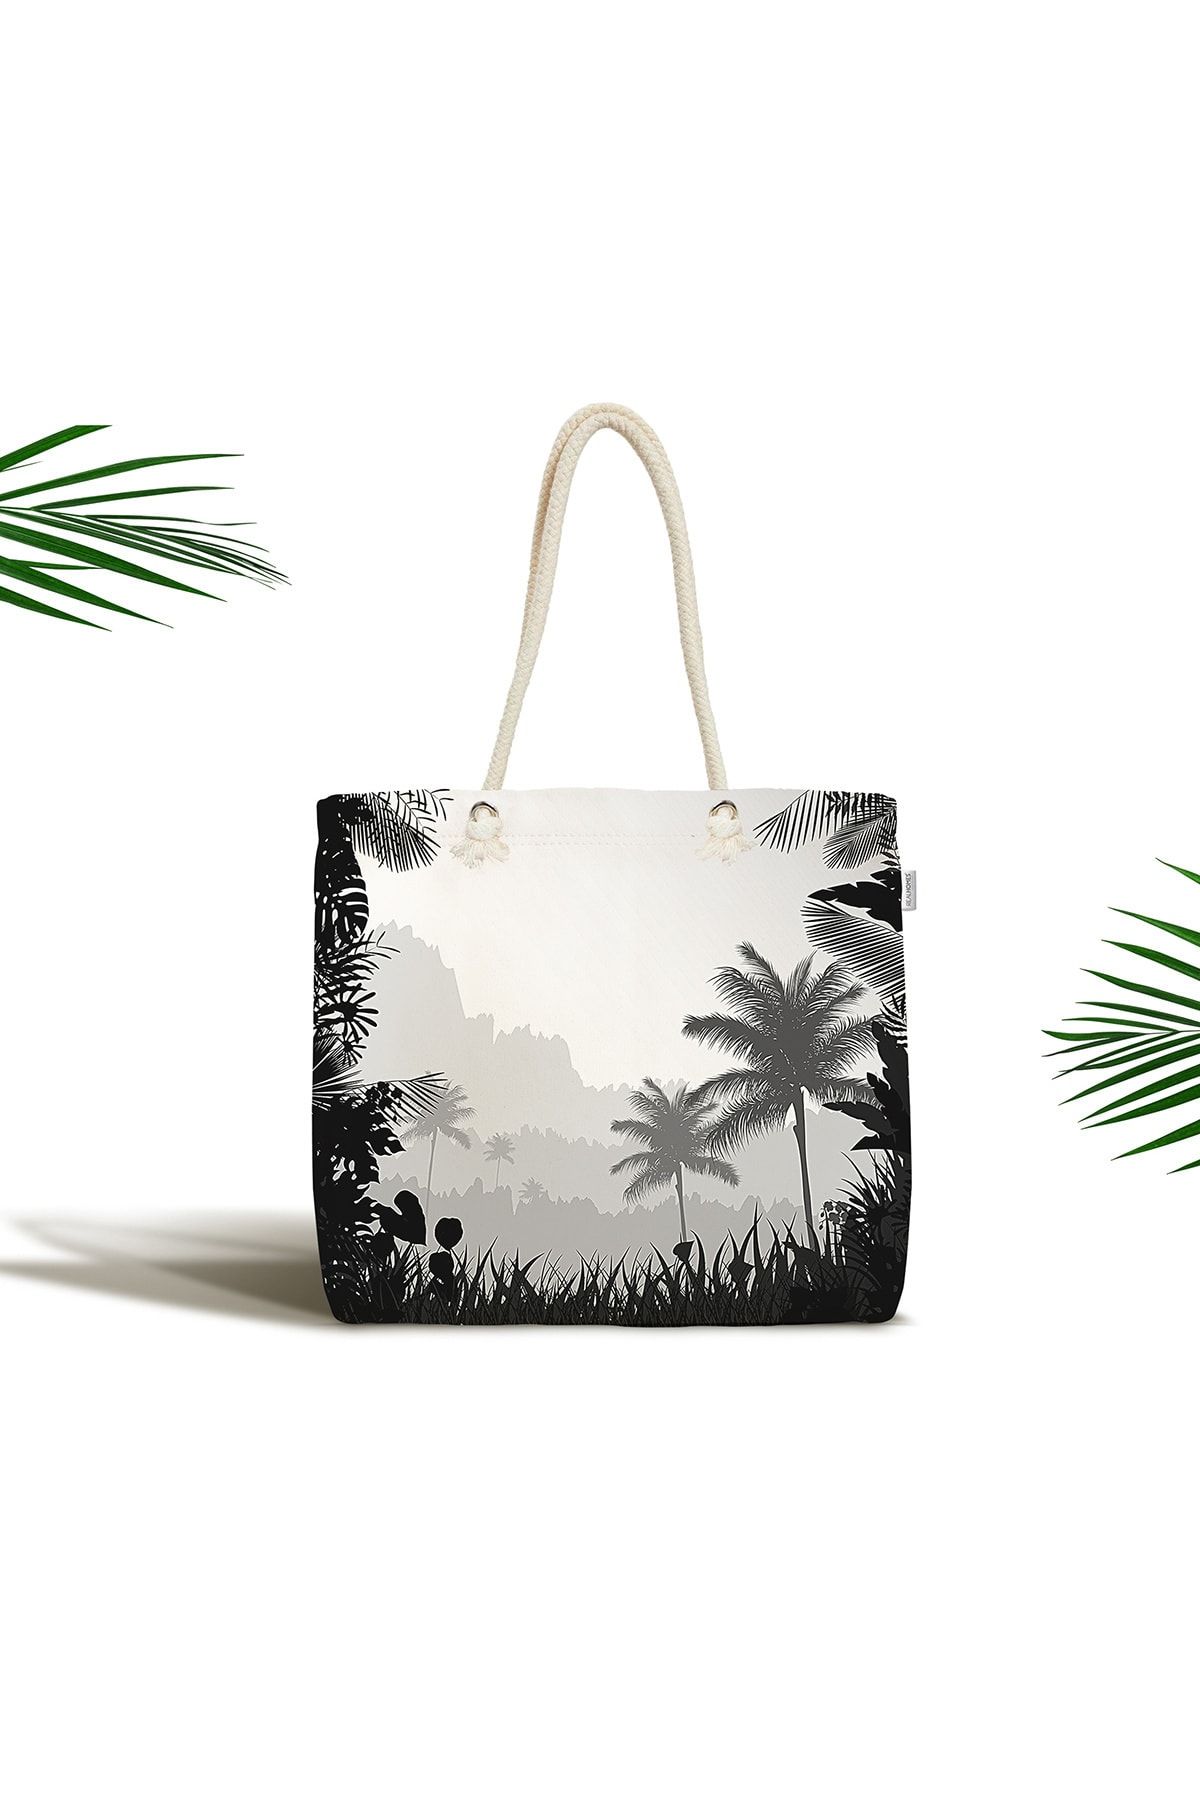 Realhomes Doğa Temalı Palmiye Ağaç Desenli Fermuarlı Plaj Çantası